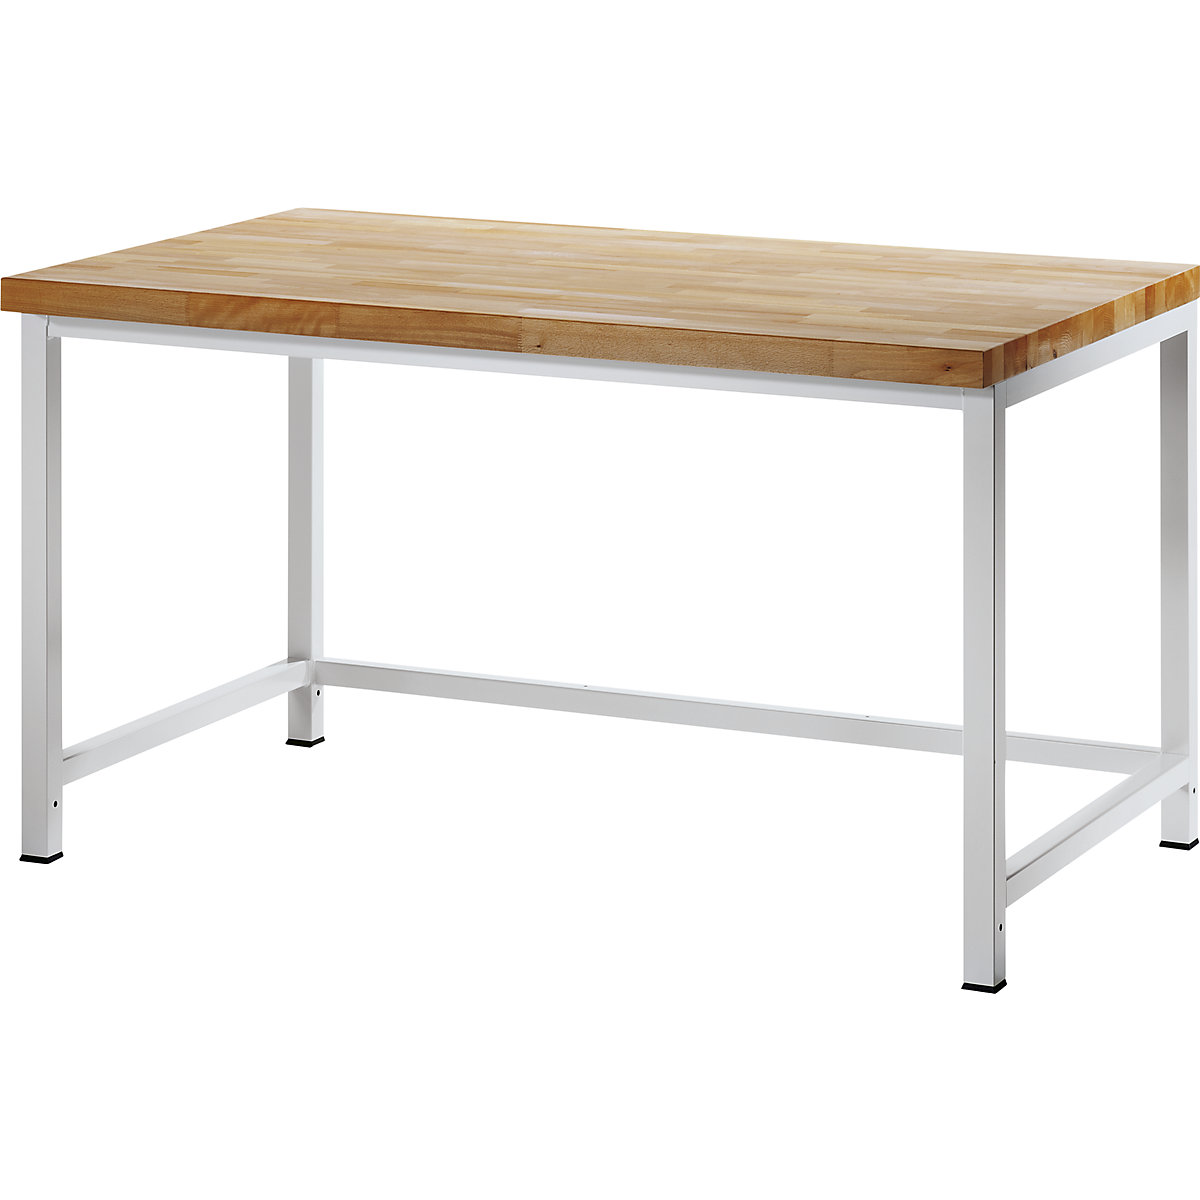 Dílenský stůl s rámovou konstrukcí – RAU, 1 příčná výztuha, hloubka 900 mm, šířka 1500 mm-1